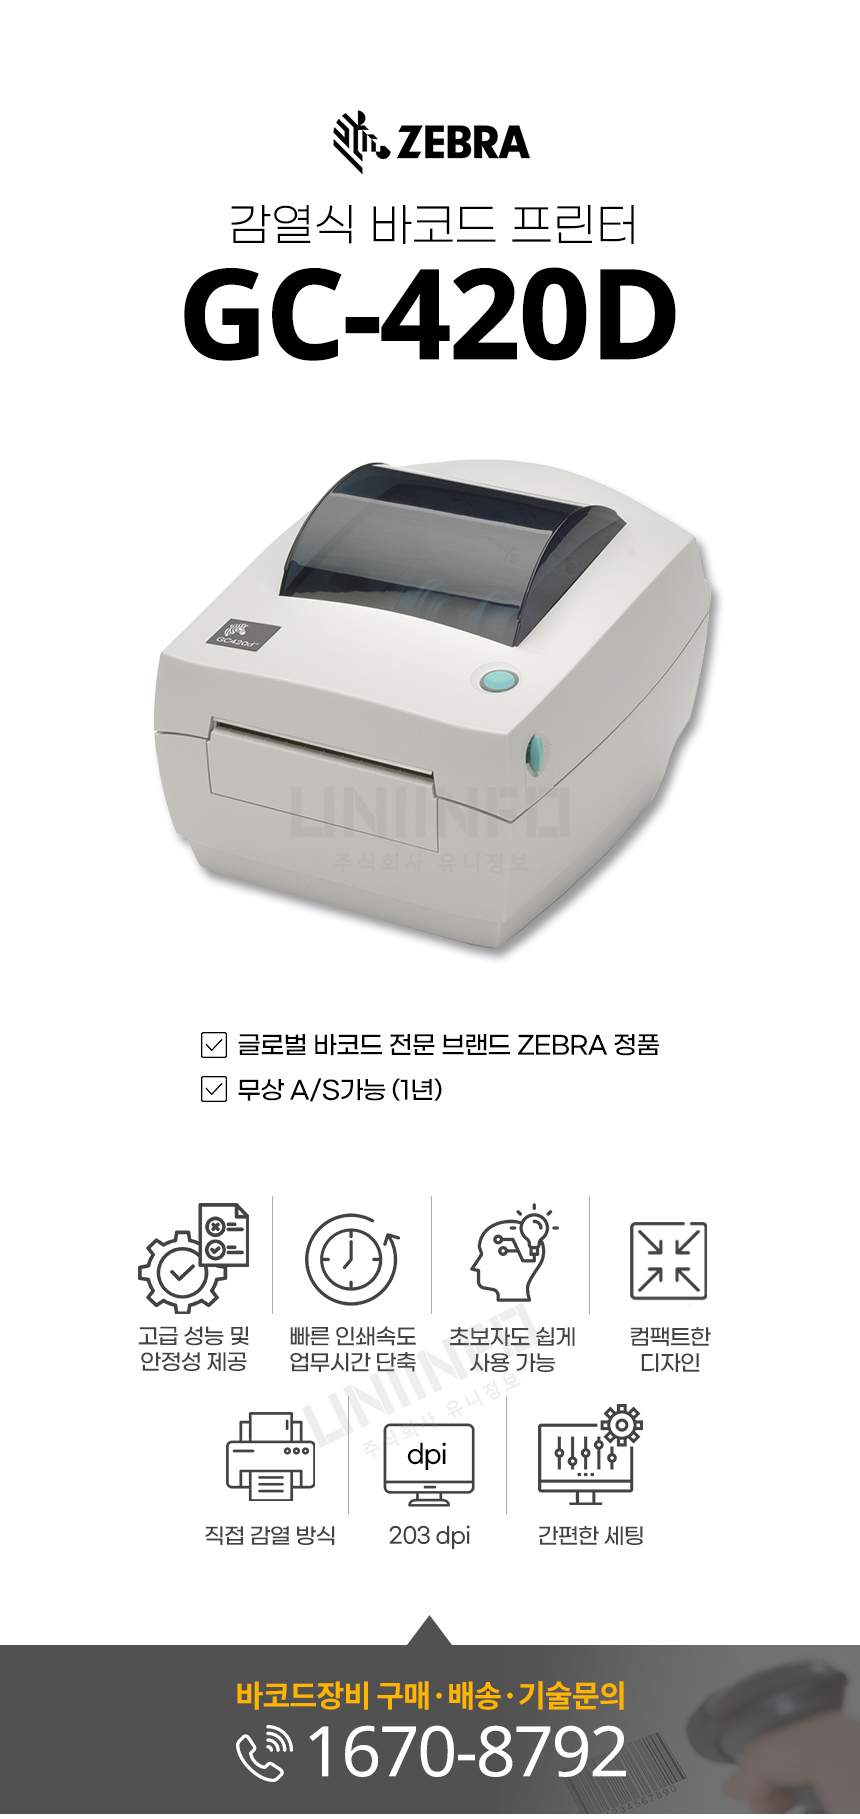 감열식 바코드 프린터 gc-420d zebra 정품 빠른 인쇄속도 직접 감열 방식 203dpi 간편한 세팅 컴팩트한 디자인